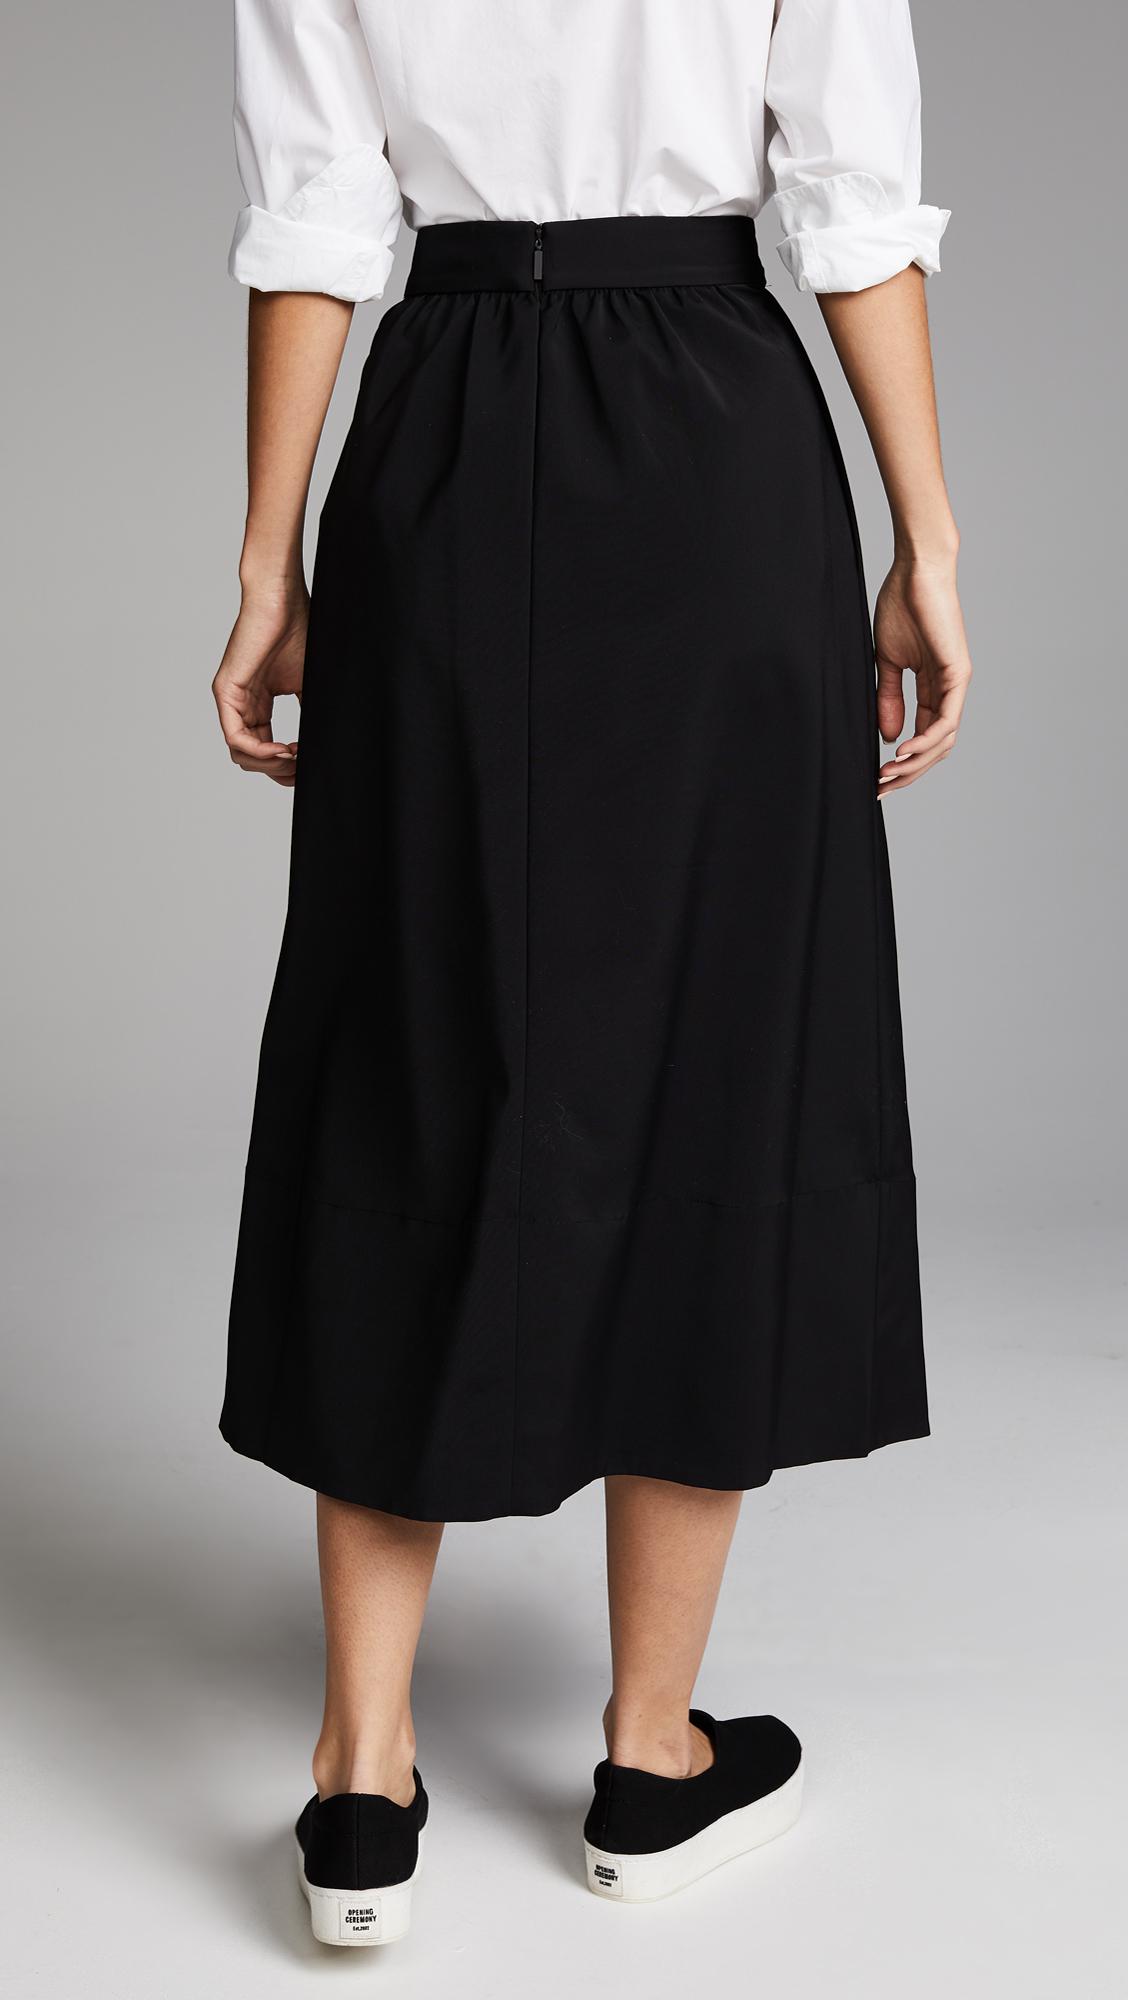 Tibi Synthetic Smocked Waistband Full Skirt in Black - Lyst